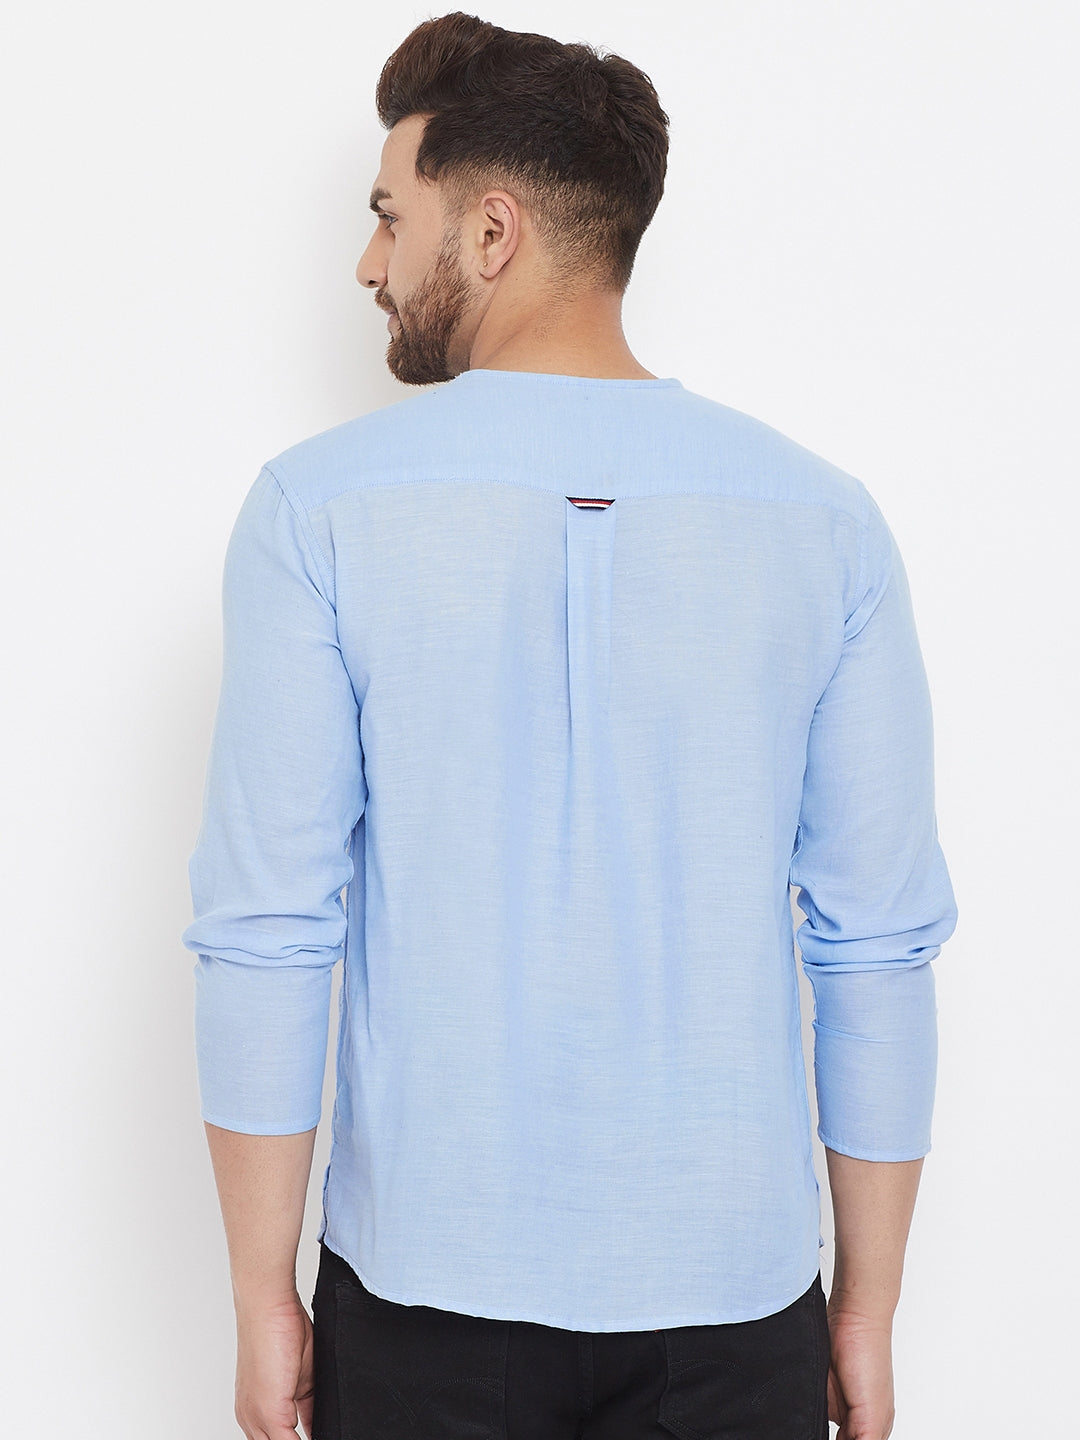 Men's Blue Summer Casual Shirt Kurta - Even Apparels